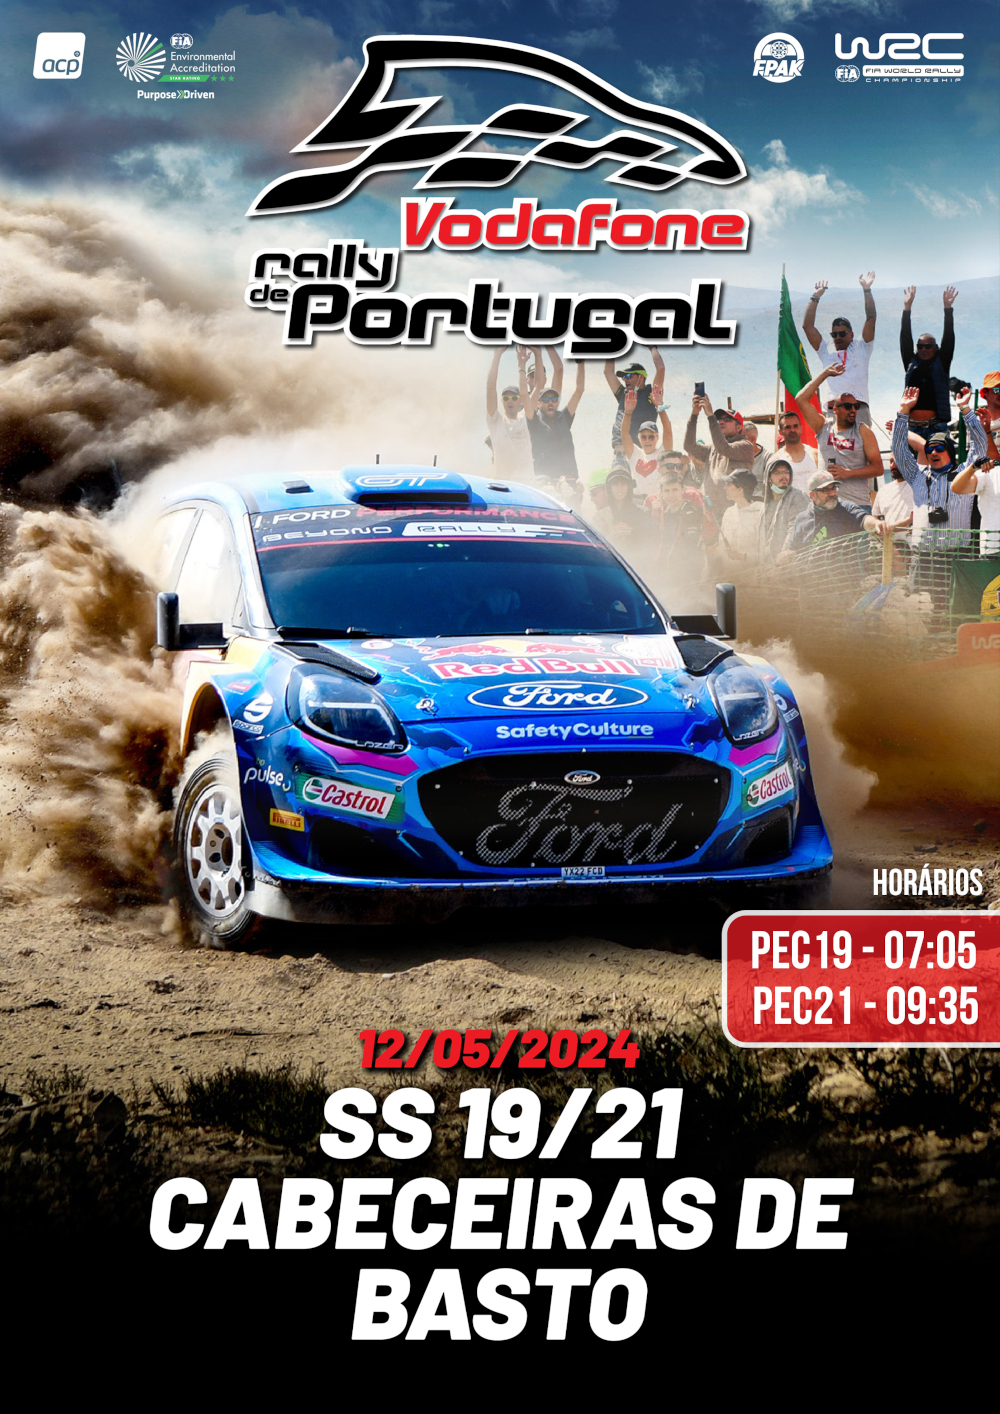 Leia mais sobre Rally de Portugal em Cabeceiras de Basto